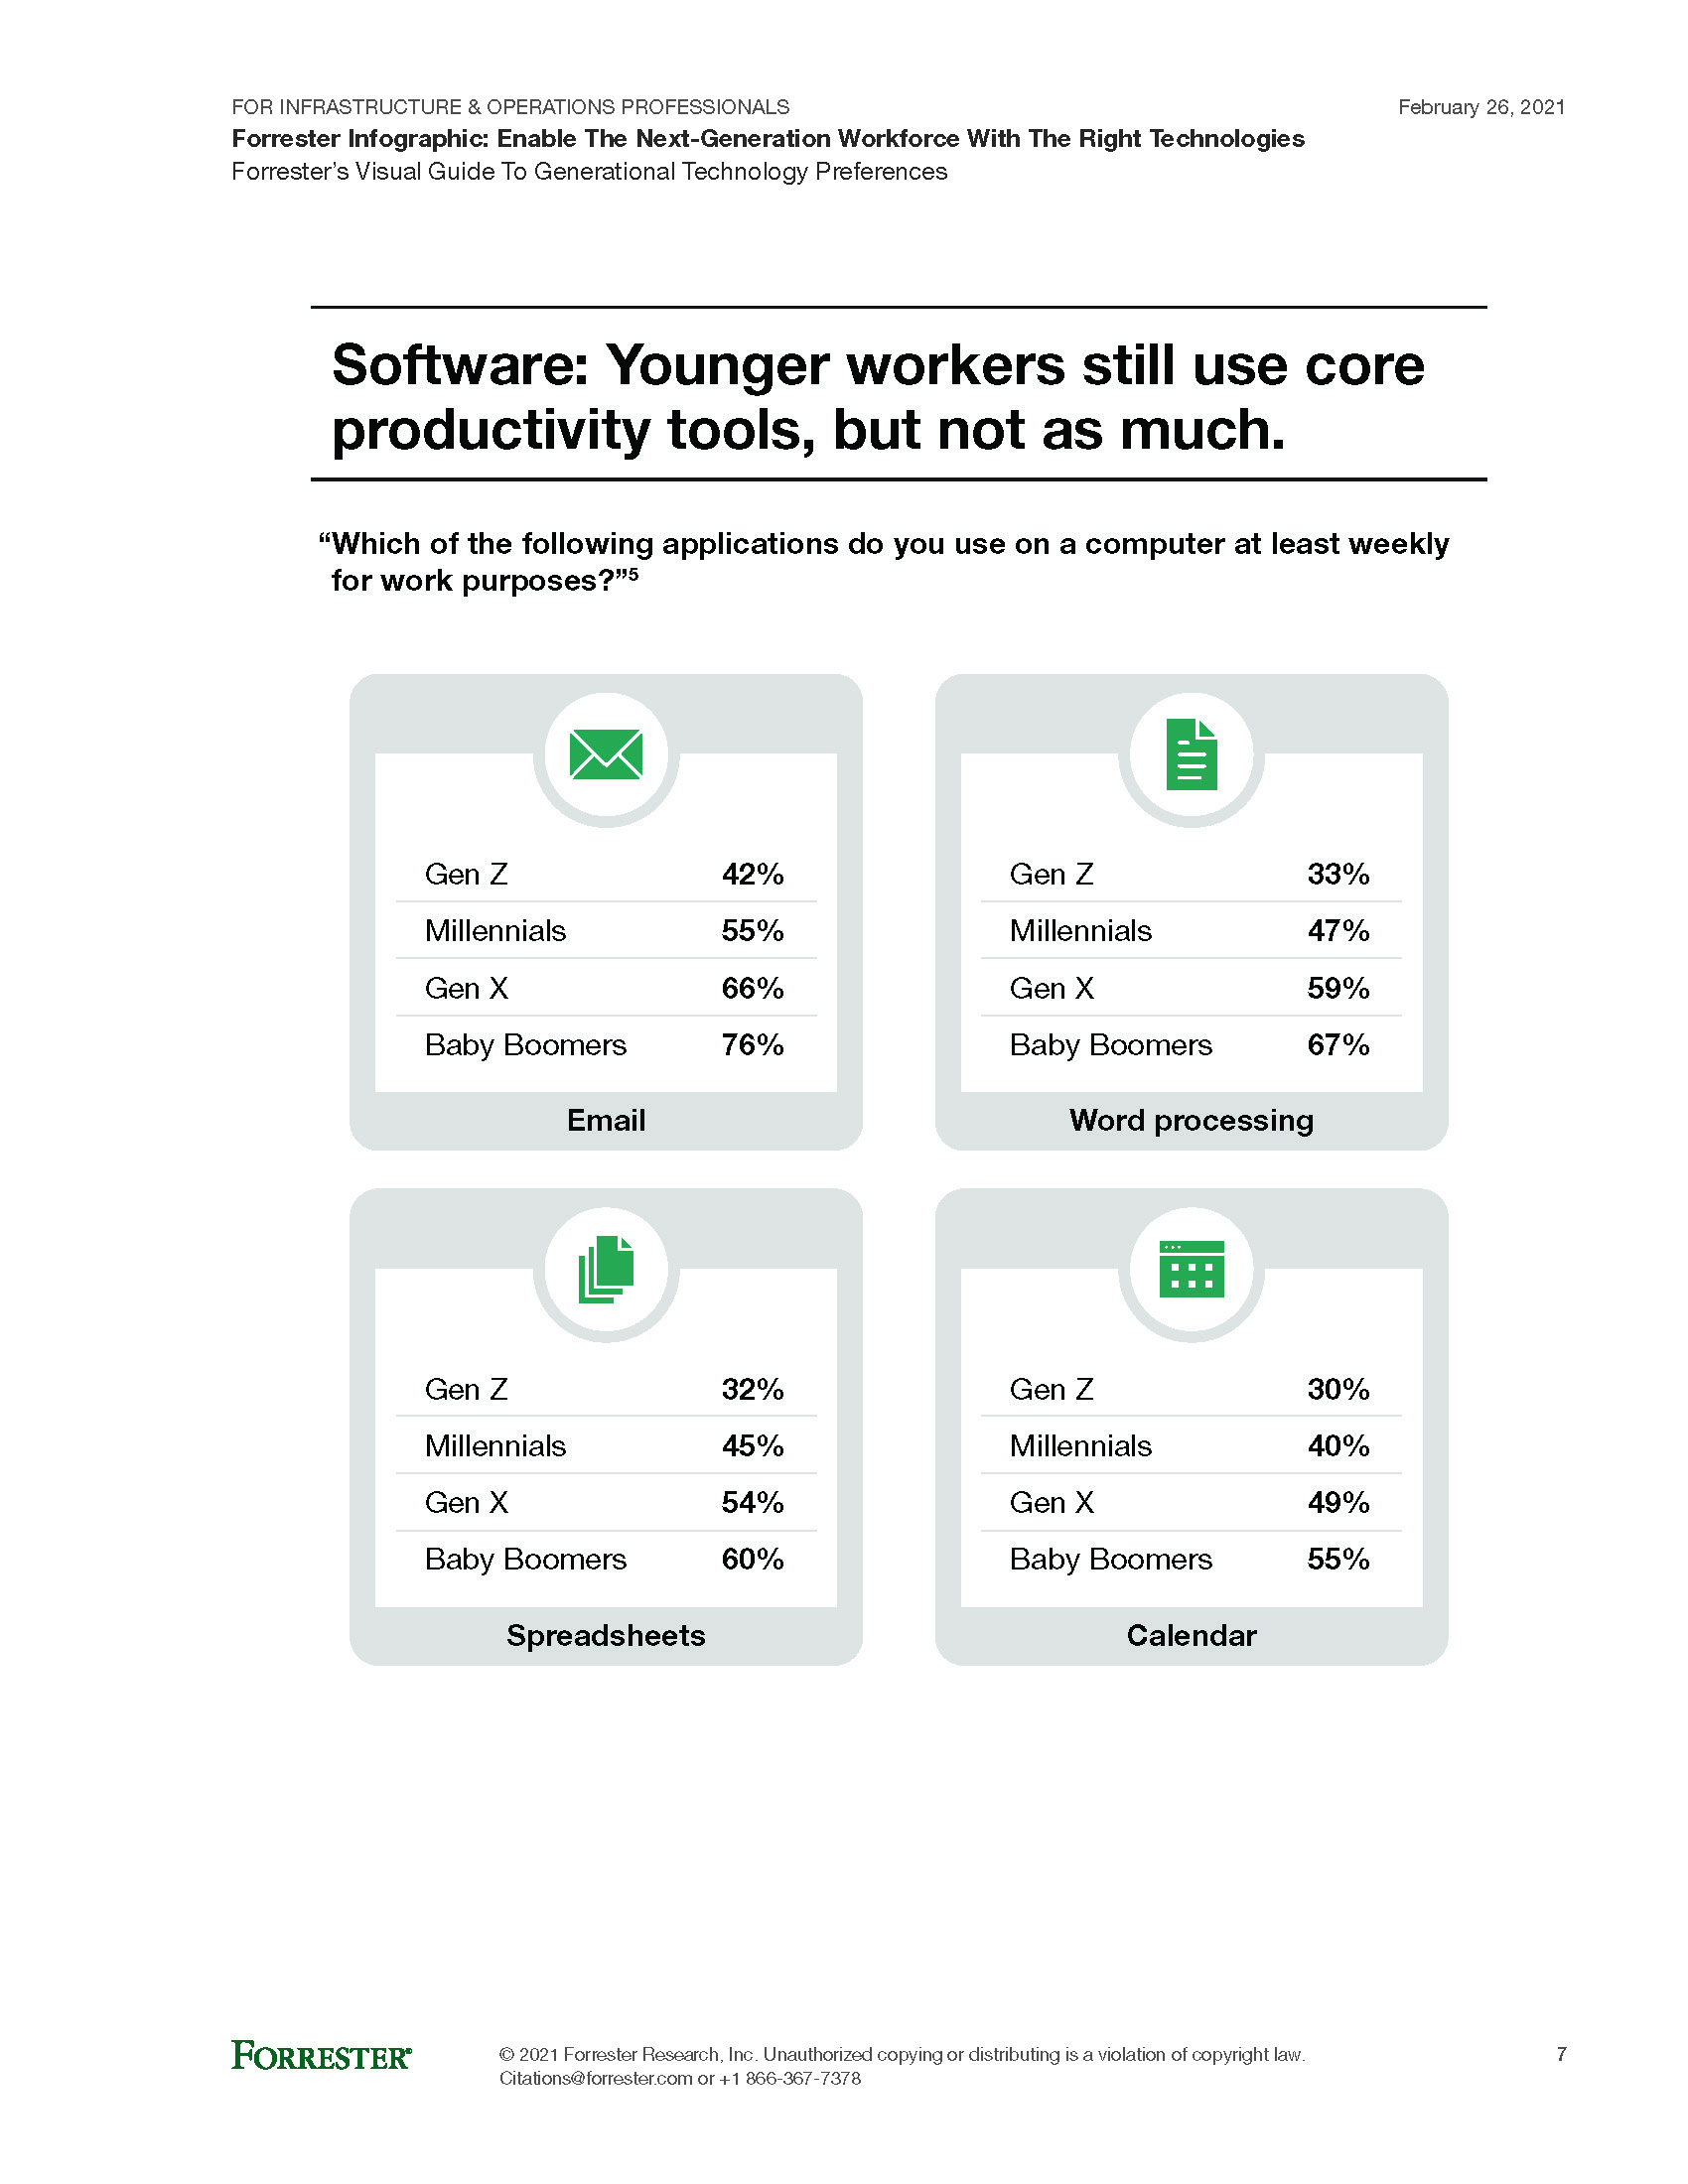 Infographie Forrester sur les travailleurs de la prochaine génération et leurs préférences technologiques.